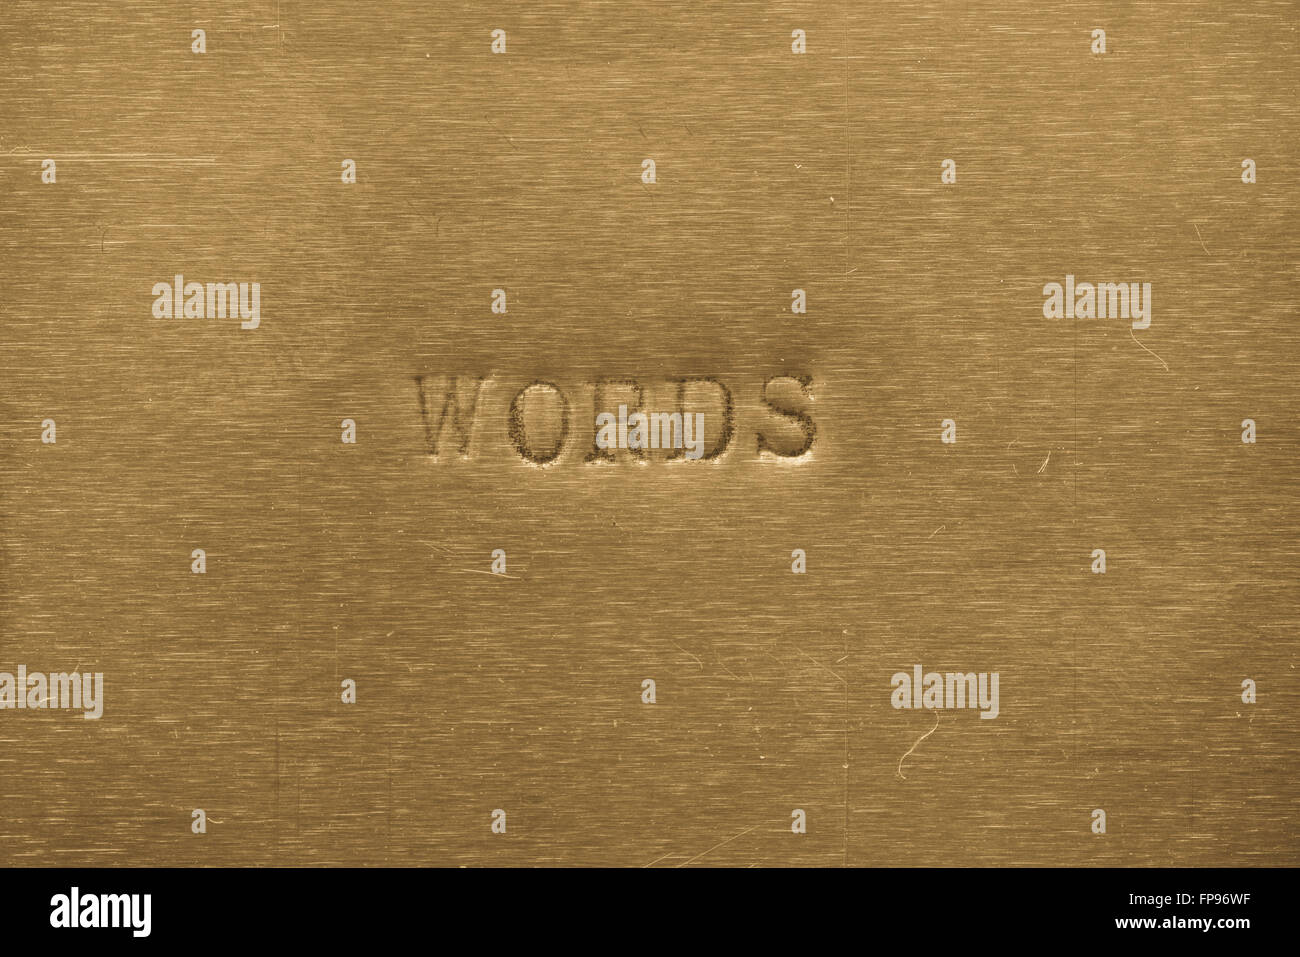 Wort Wörter auf Goldgrund metallic gedruckt Stockfoto